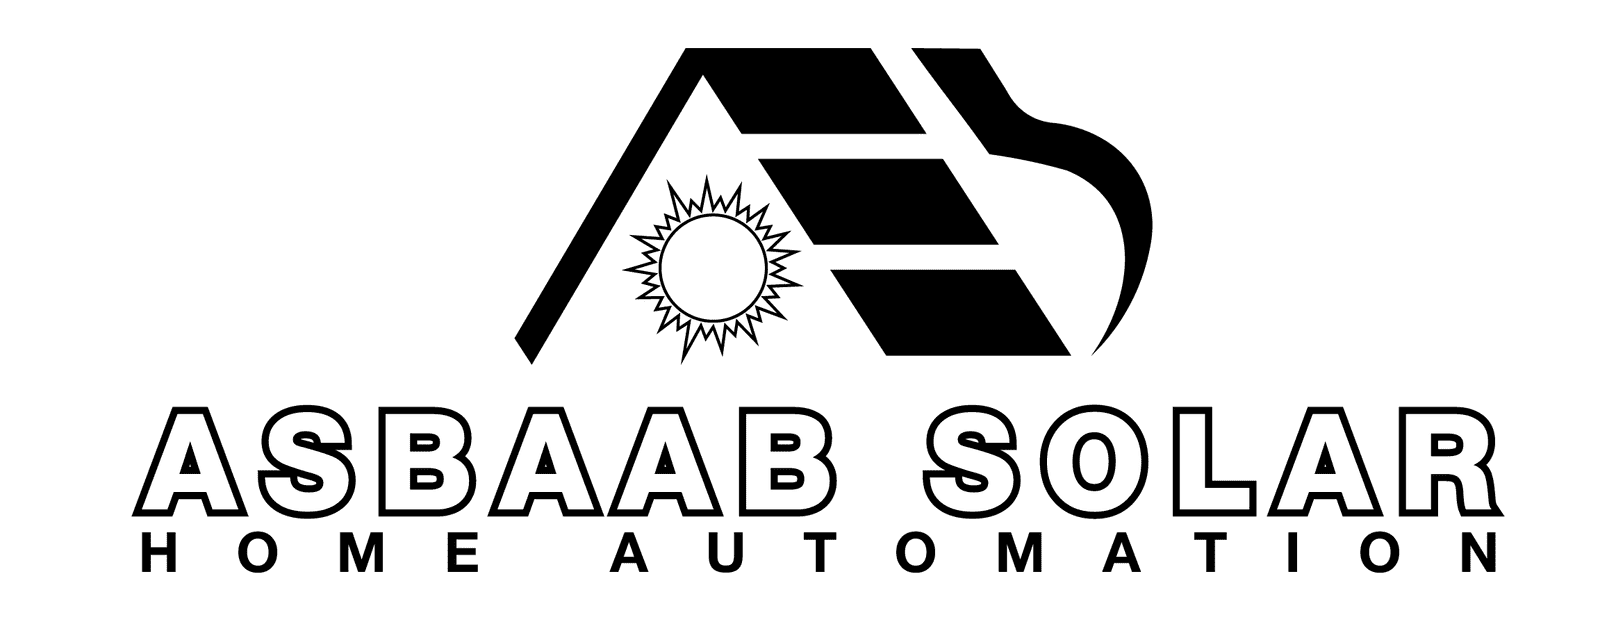 Asbaab Solar